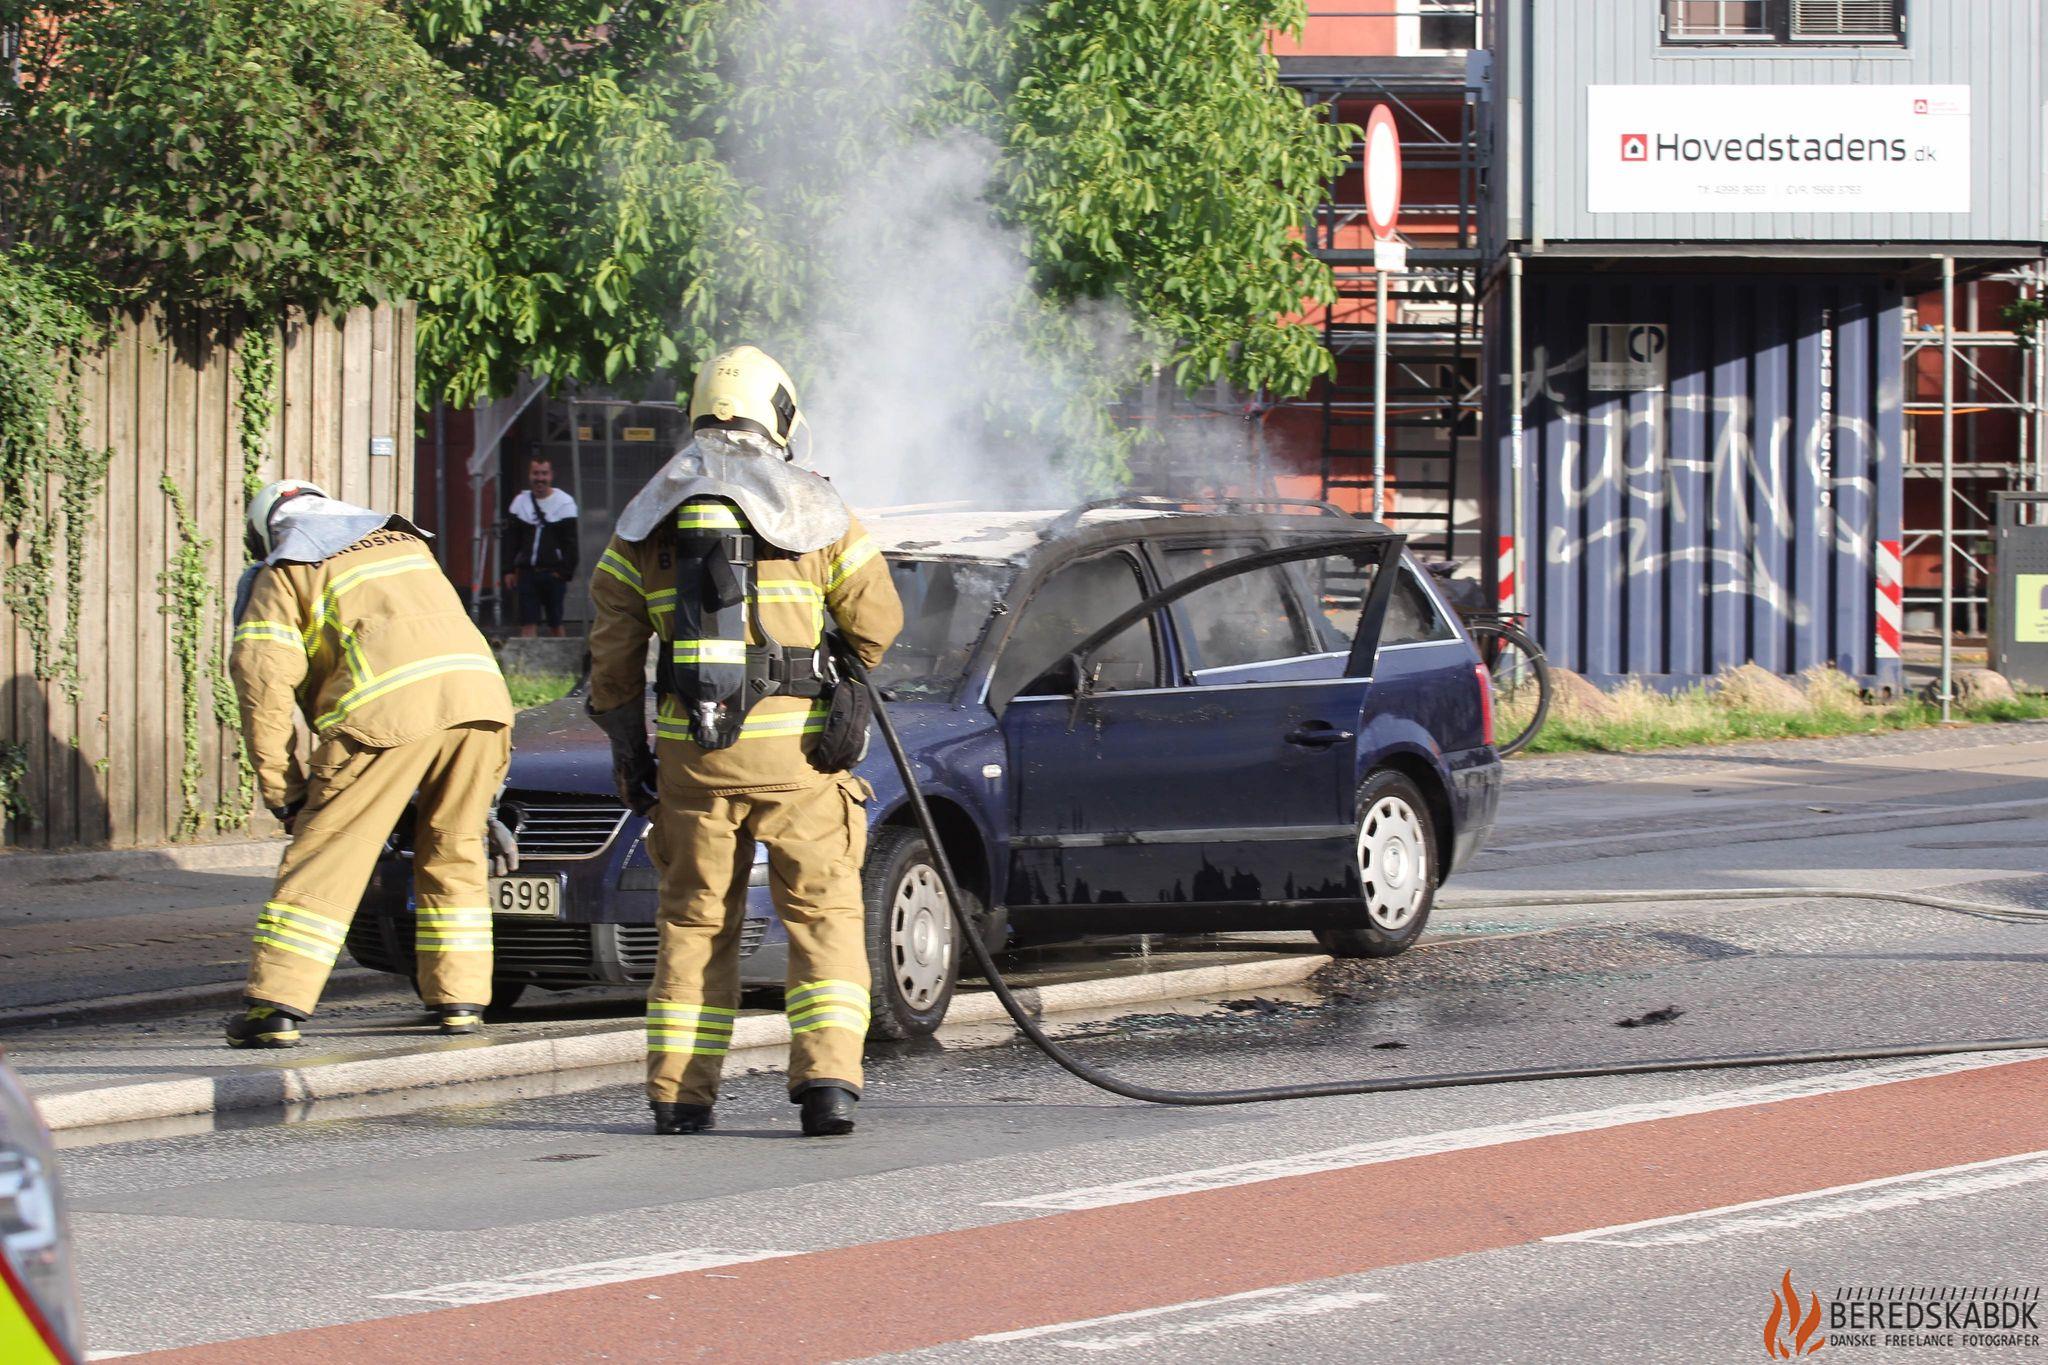 24/07-23 Brand i bil på Amagerfælledvej, København